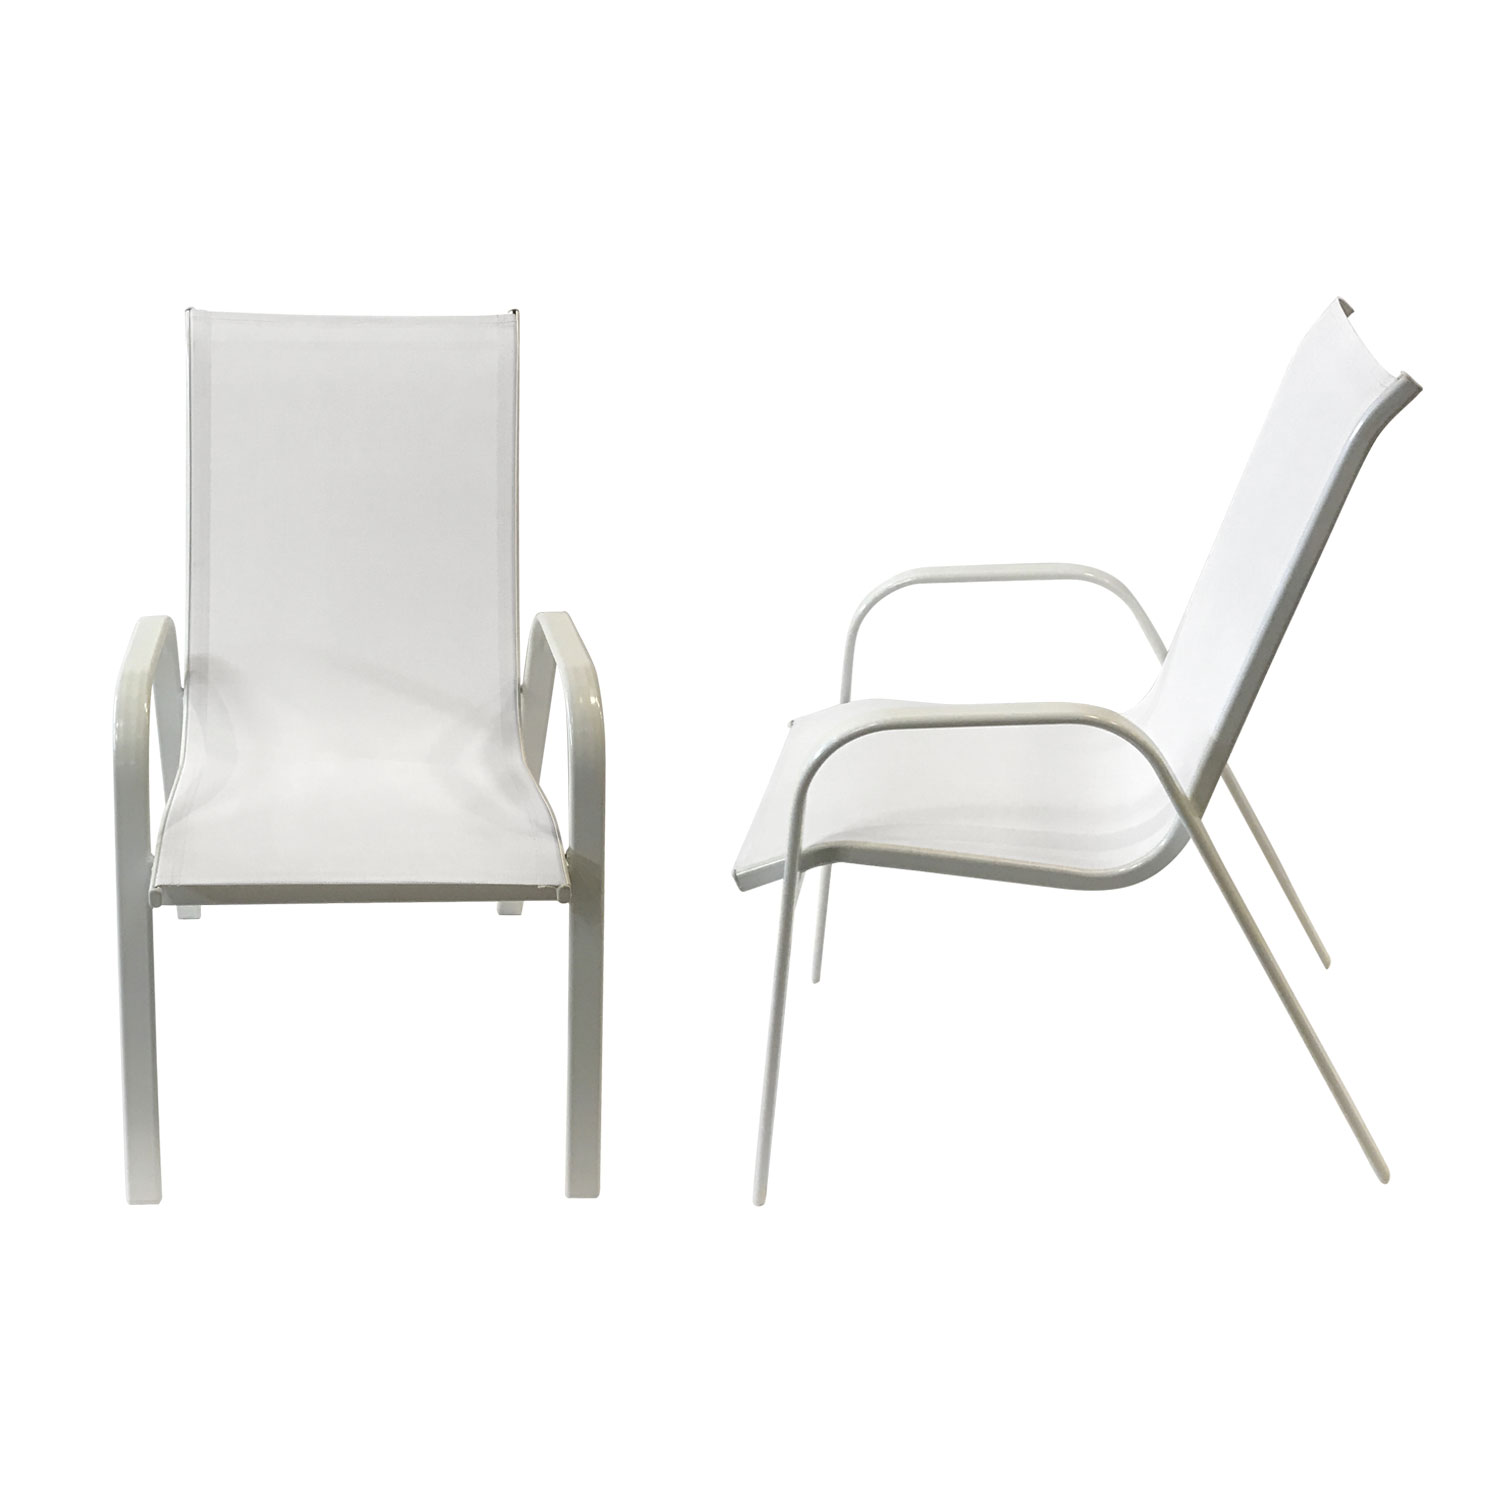 Lote de 8 sillas MARBELLA en textilene blanco - aluminio blanco